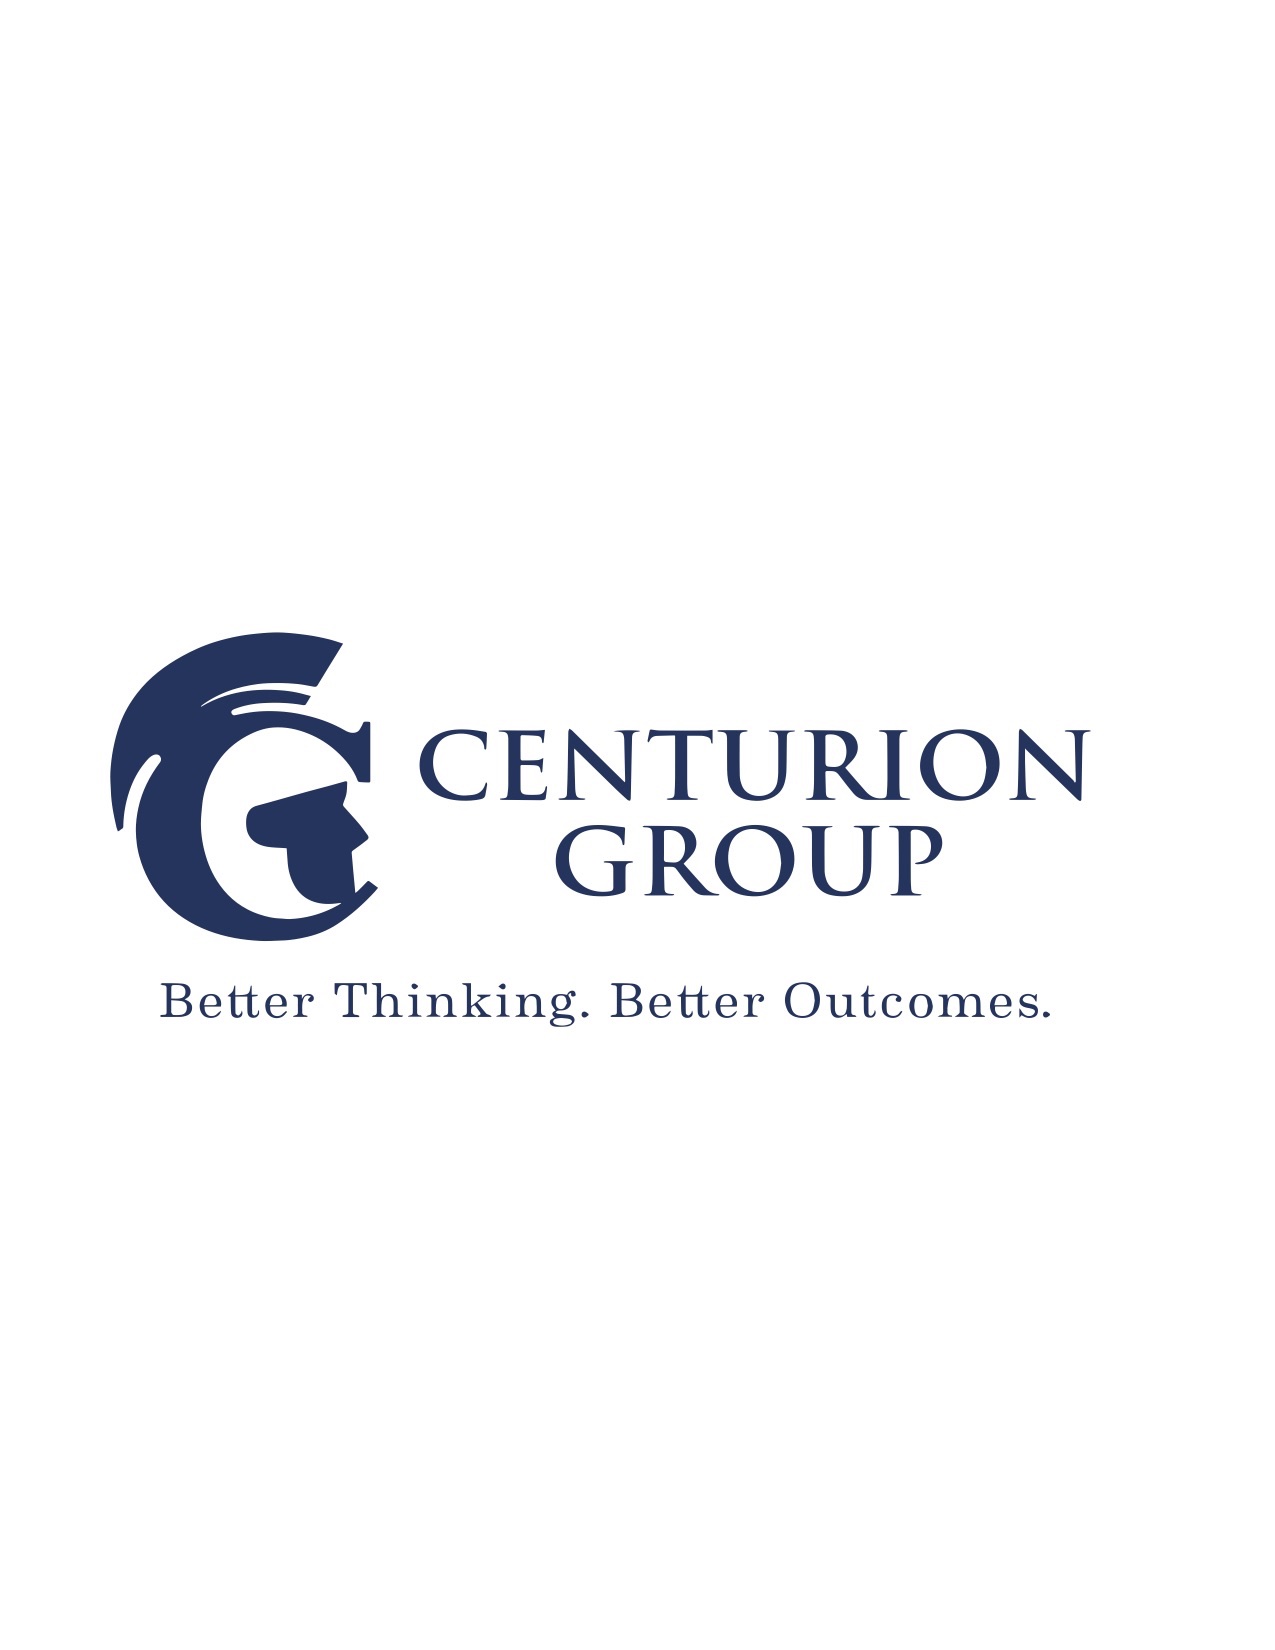 Centurion Logo Vector.jpg